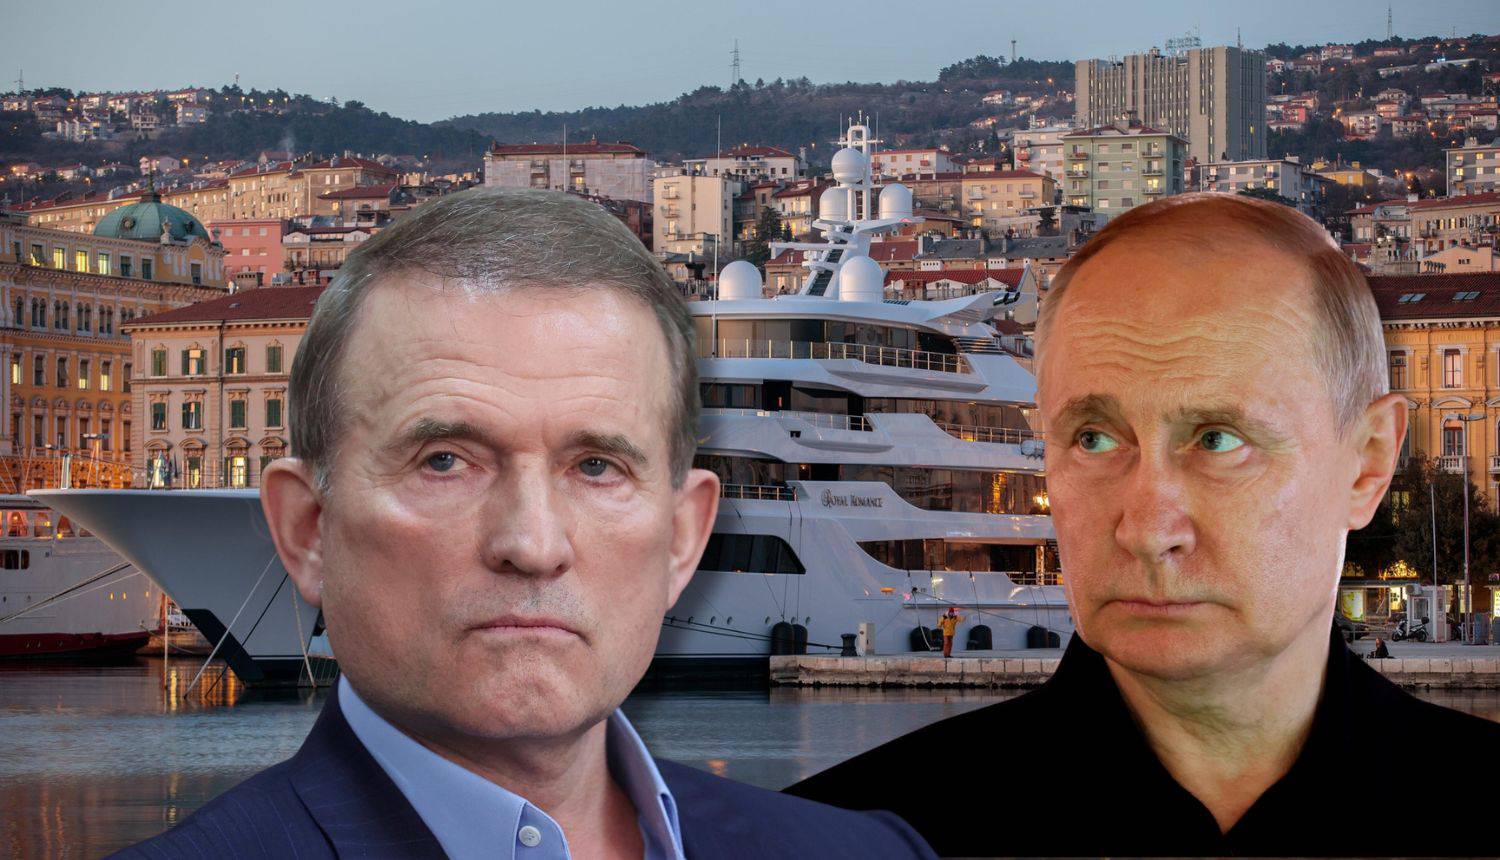 Tko je Putinov kum 'Izdajnik'? Ukrajinci mu oduzeli naftovod, Hrvati zarobili jahtu u Dalmaciji